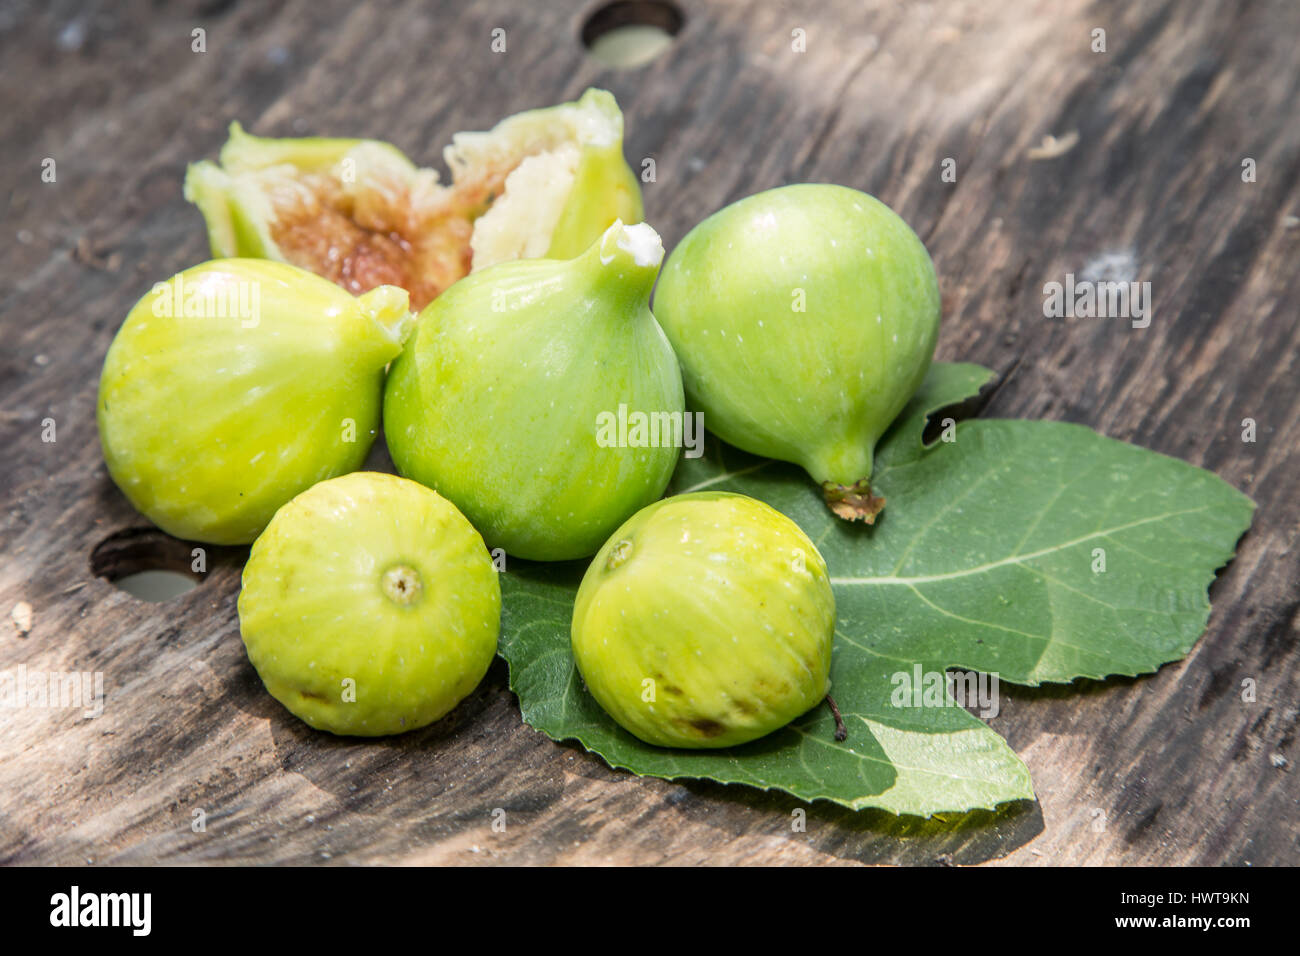 Fruits mûrs figure sur la table en bois. Banque D'Images